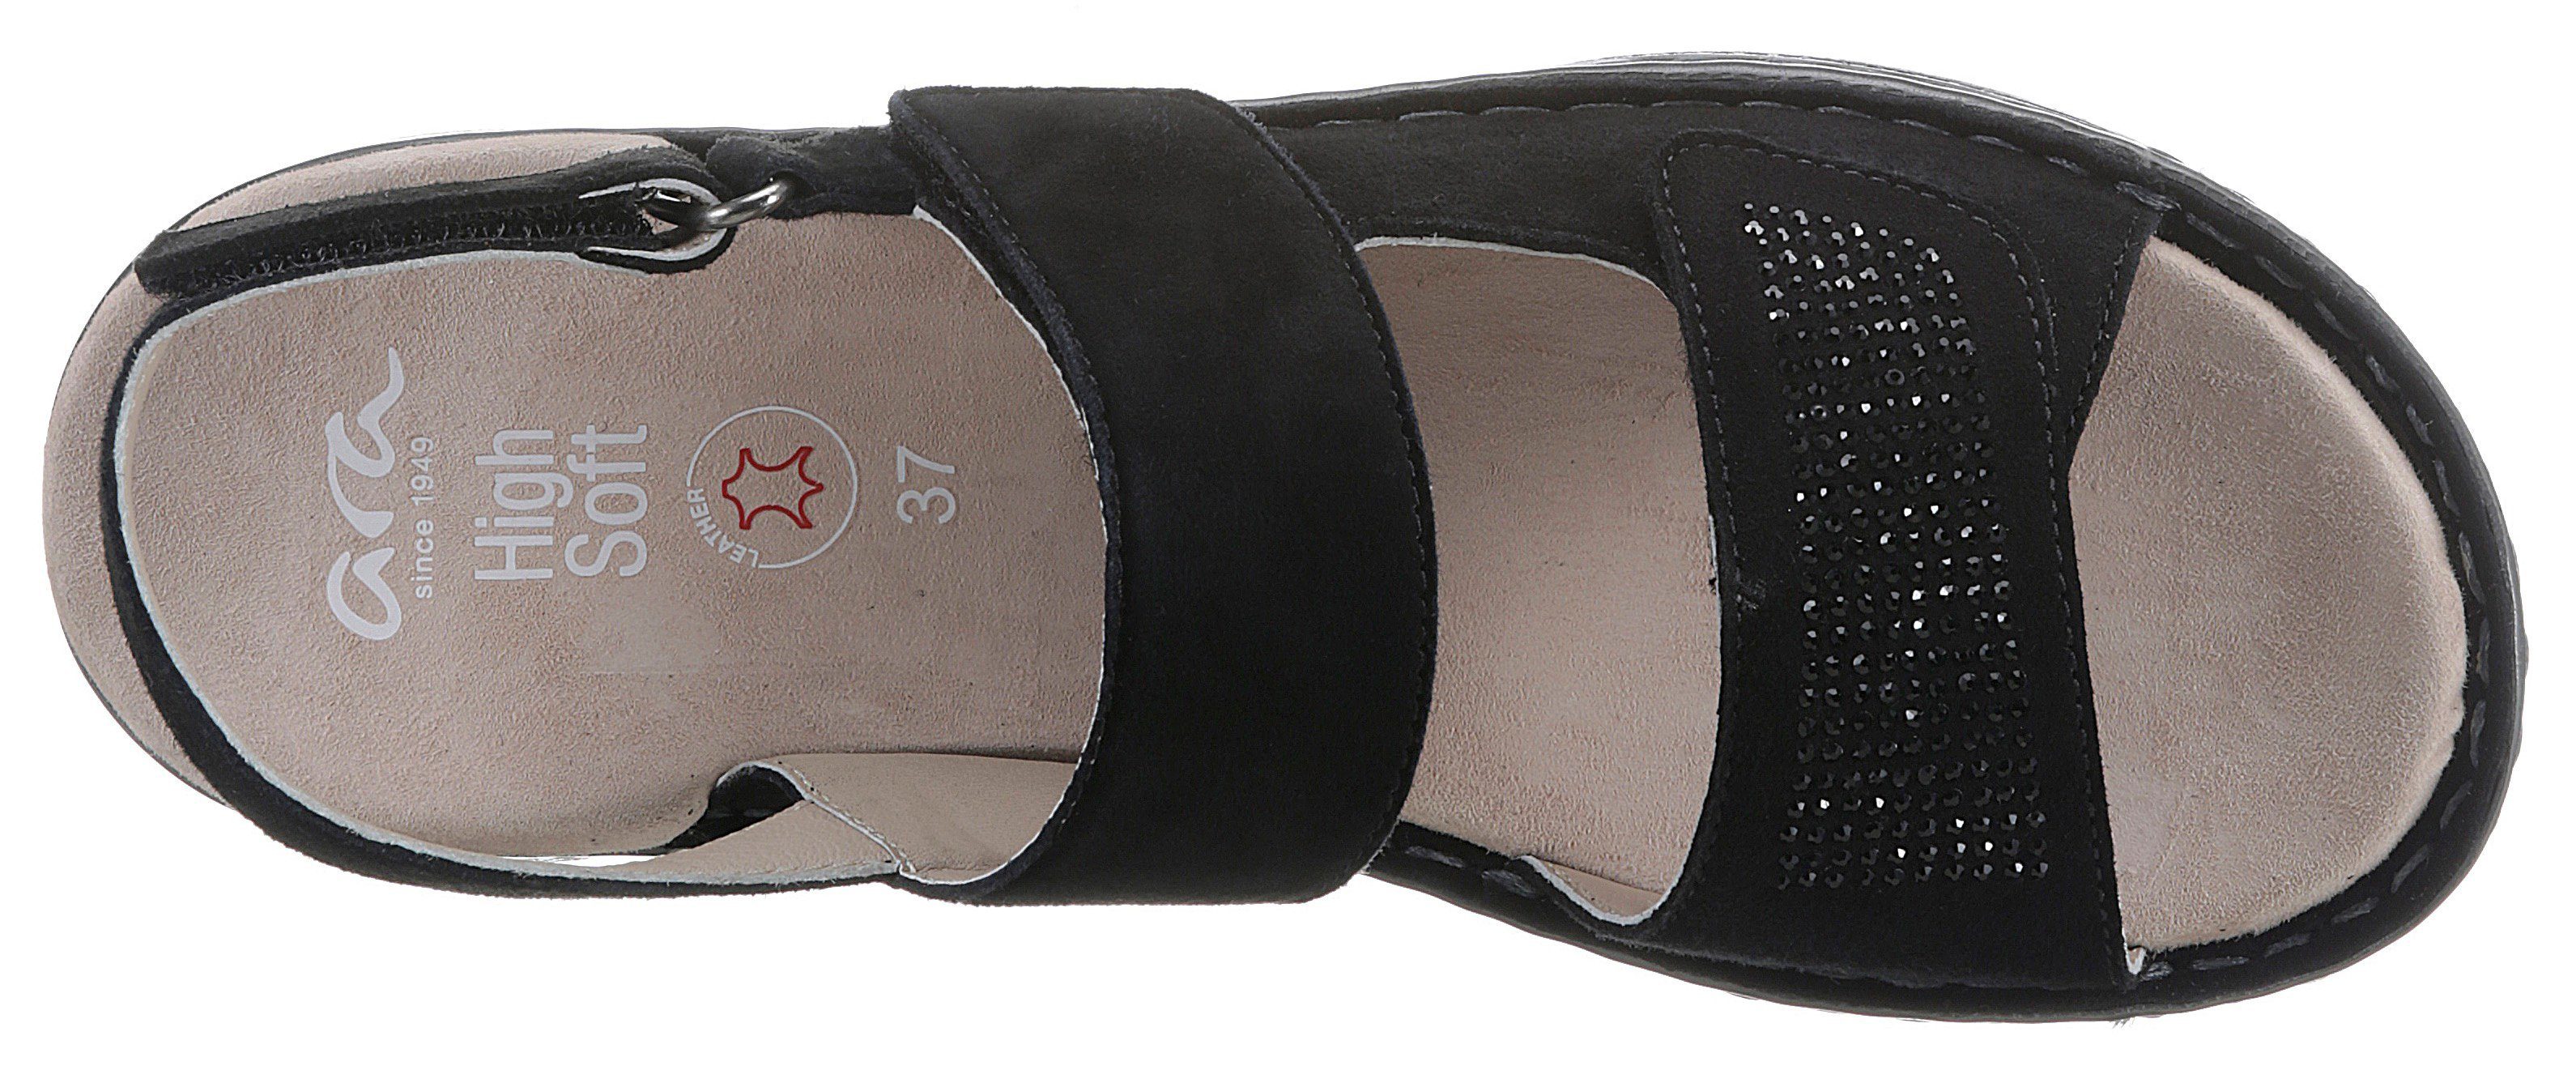 Ara HAWAII Sandalette bequemer schwarz in G 048054 Weite